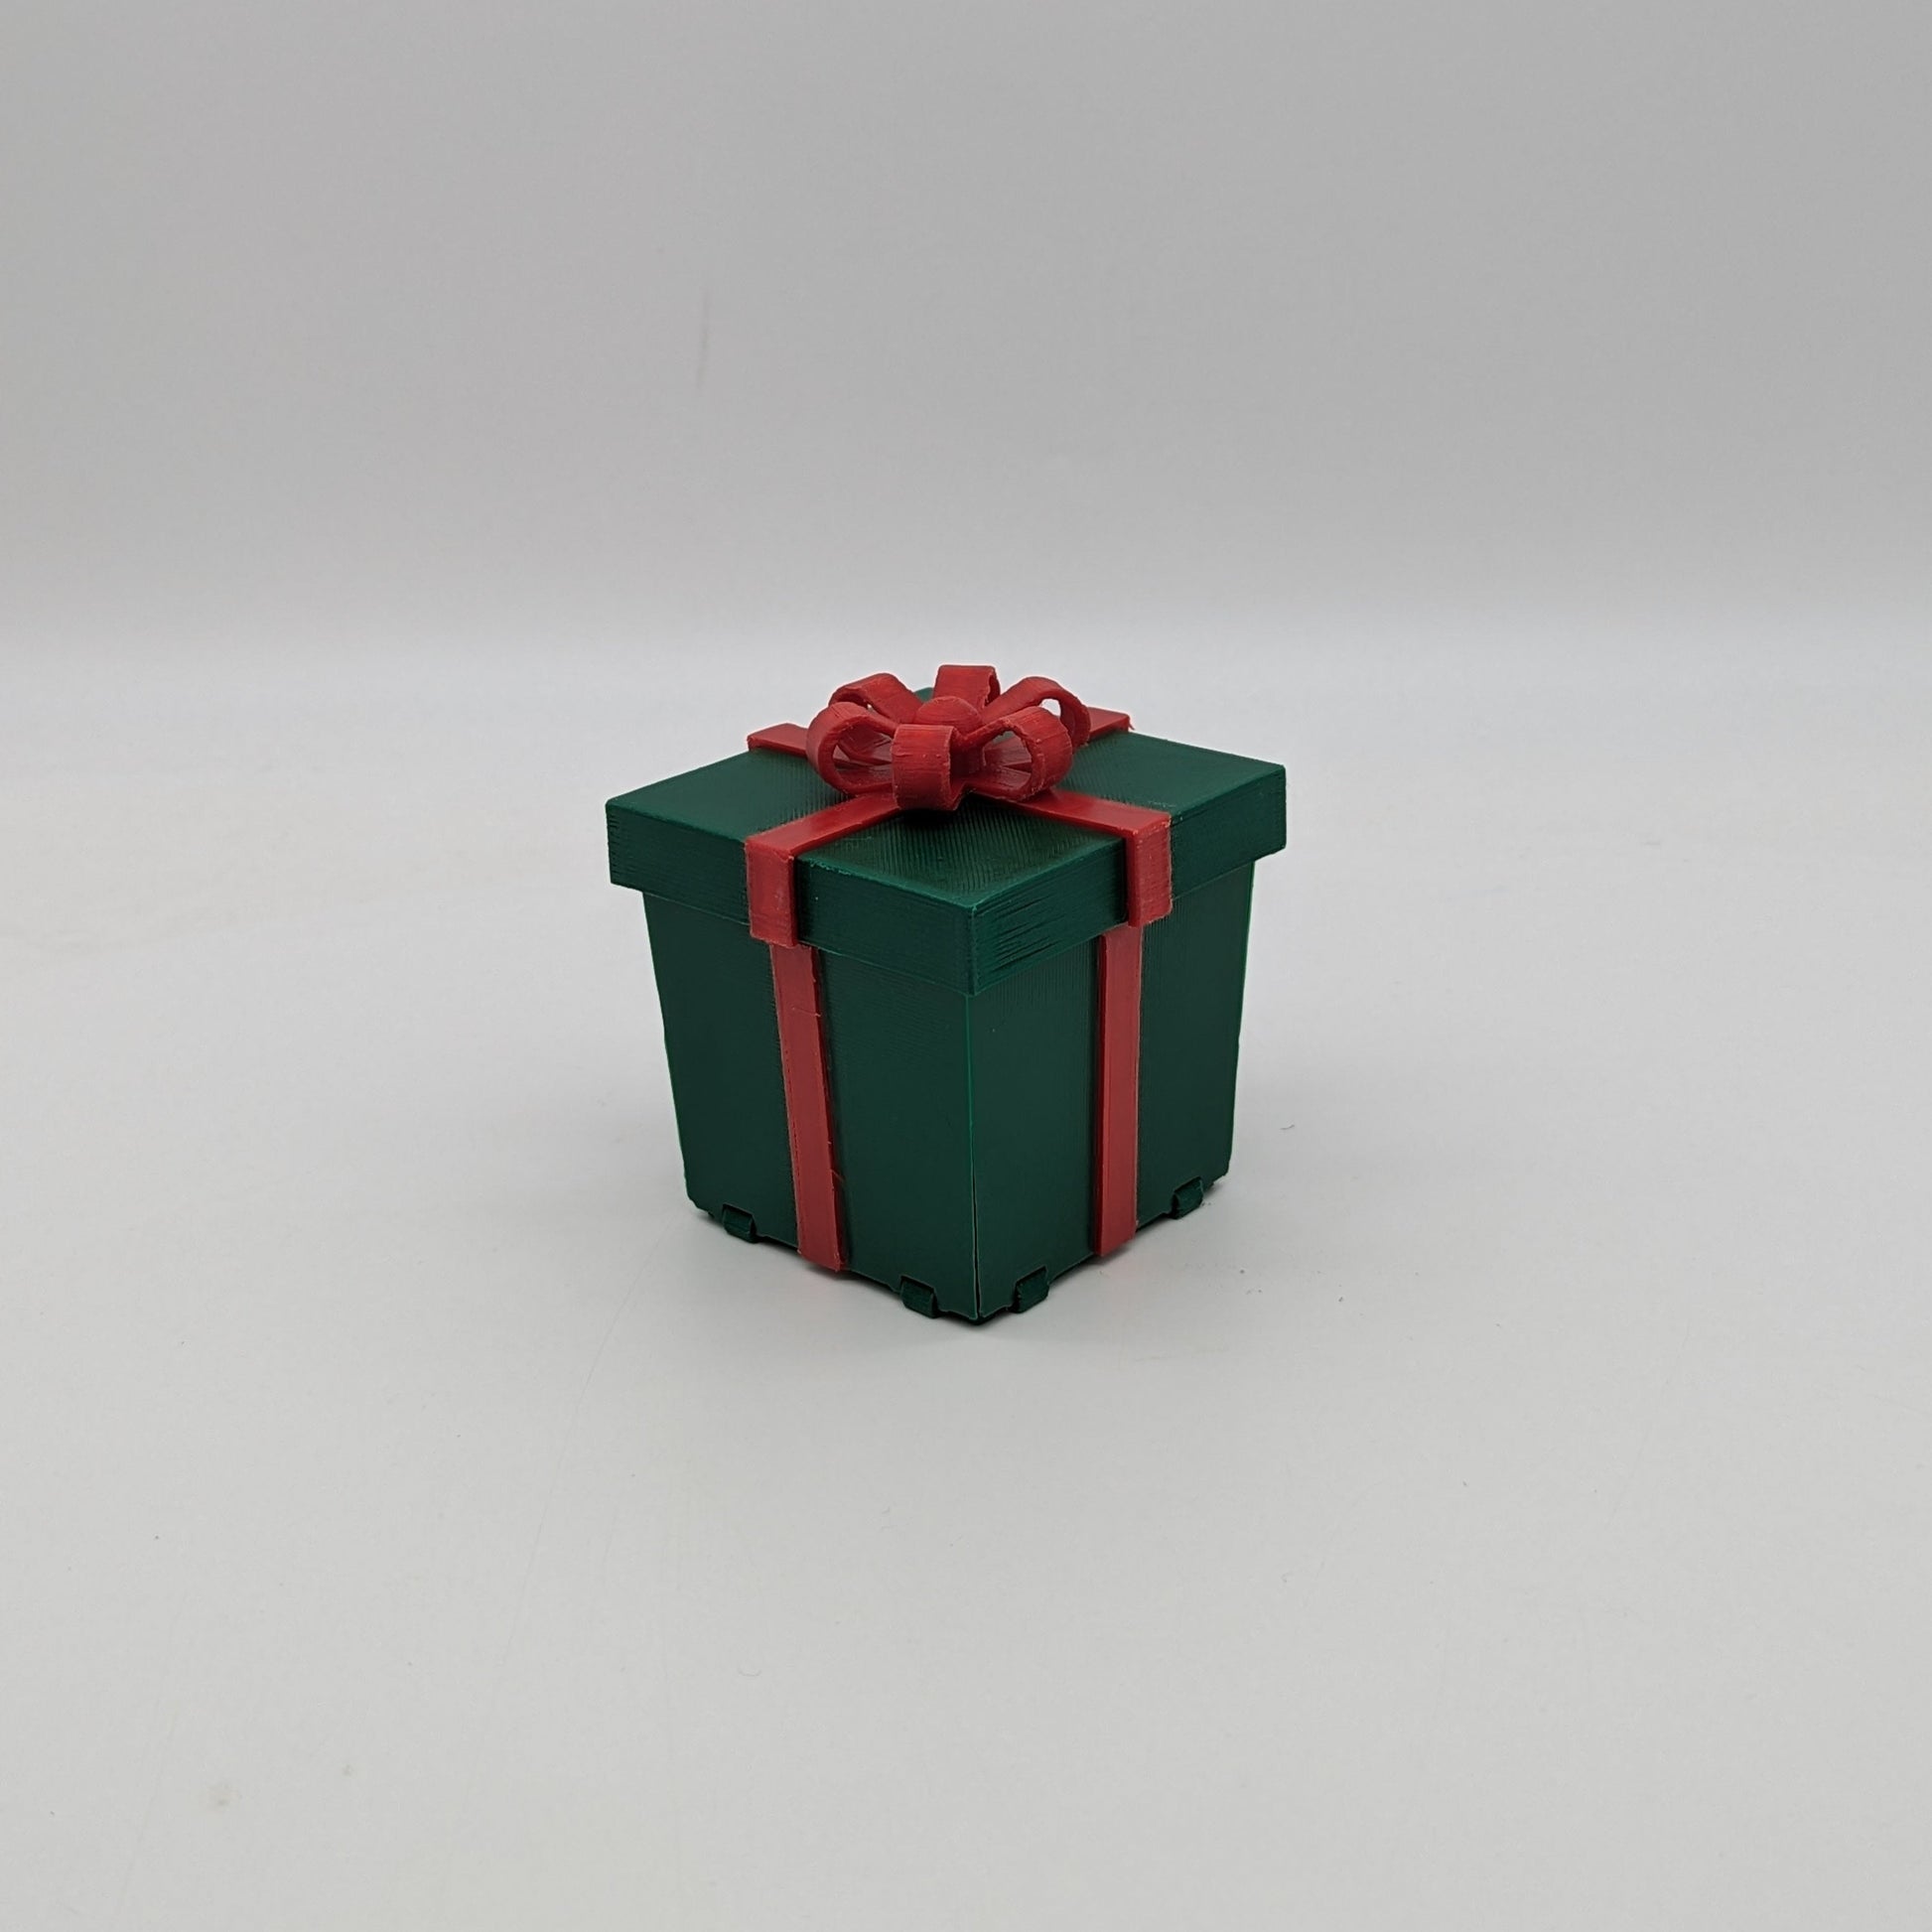 Prank, gift box, pacco regalo, scherzo, regalo scherzoso, compleanno, buon compleanno